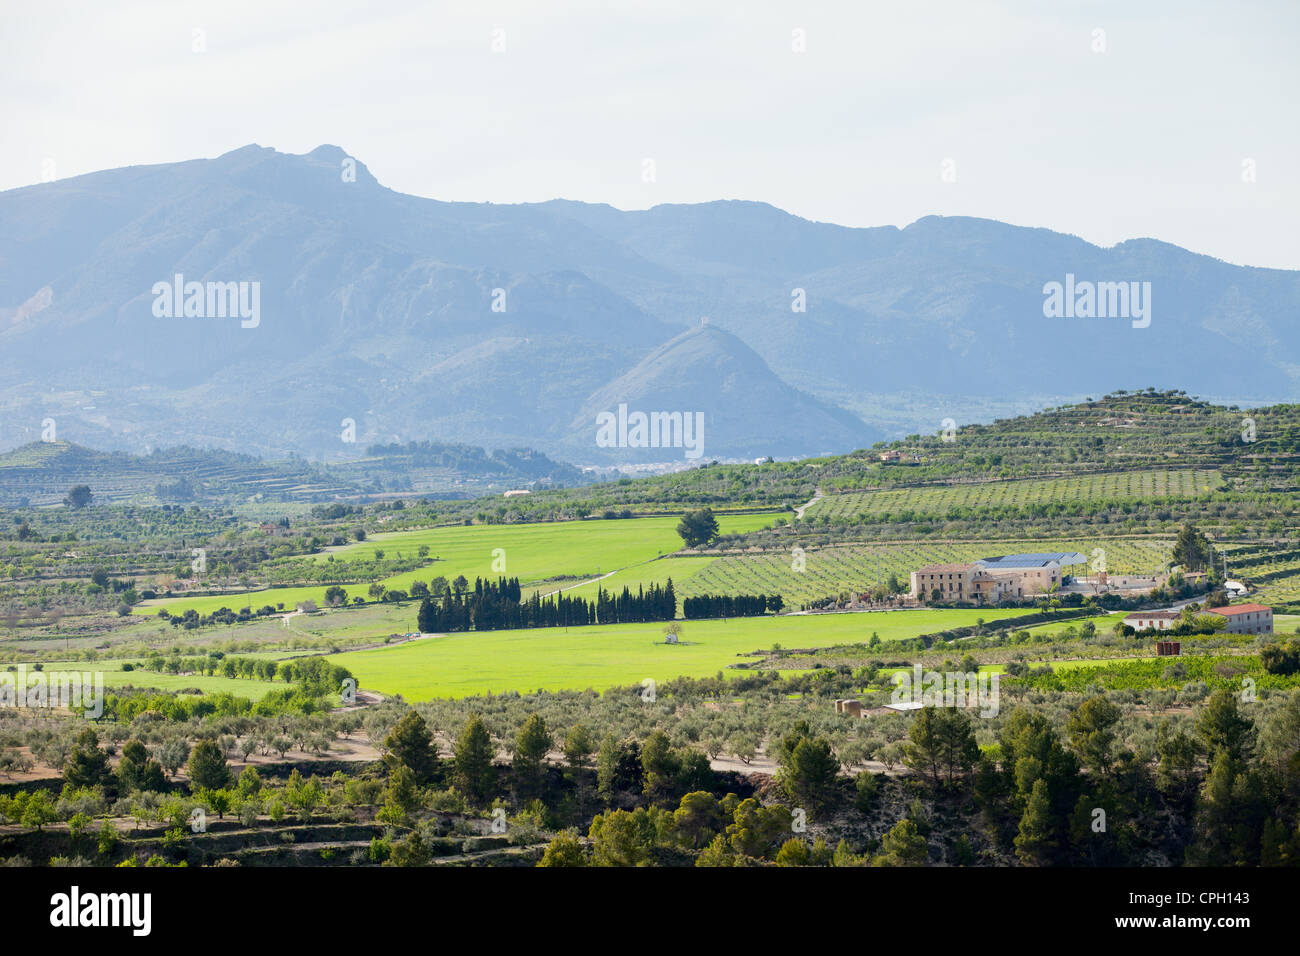 Vista típica del sureste de España - lotes de Agricultura, Plantas de naranja, montañas al fondo Foto de stock